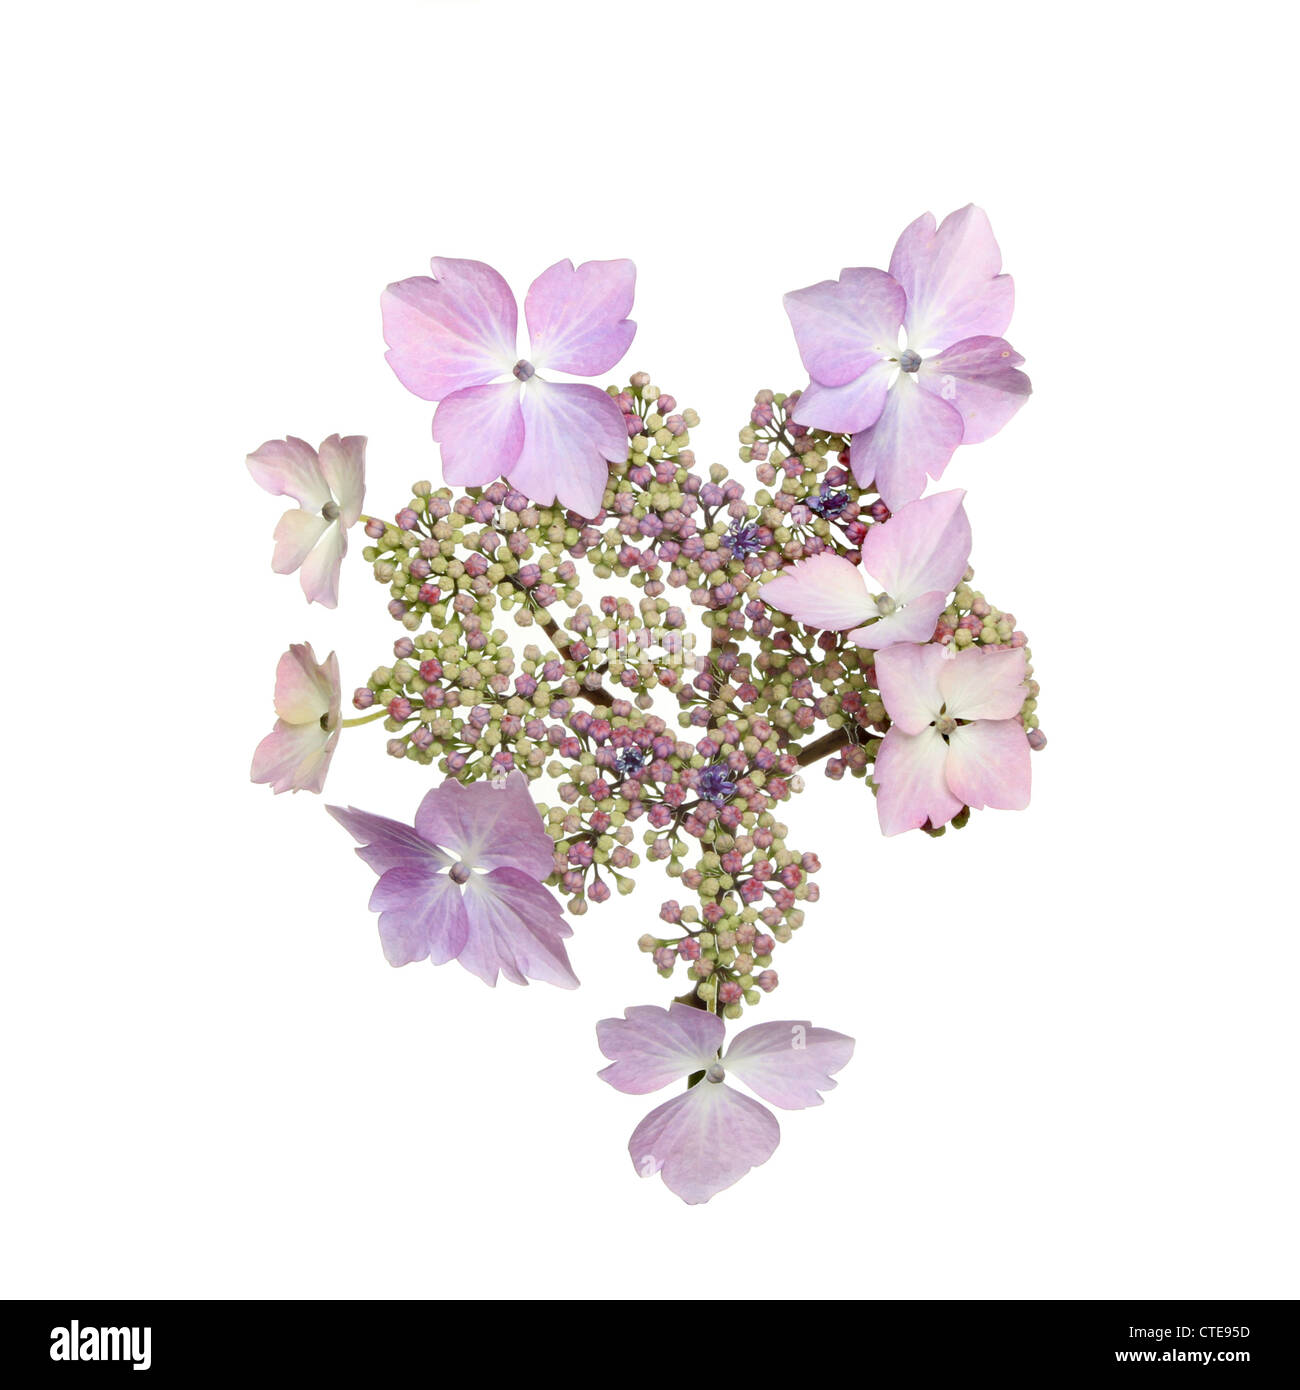 Pastell lila Lacecap Hortensie Blume isoliert gegen weiß Stockfoto